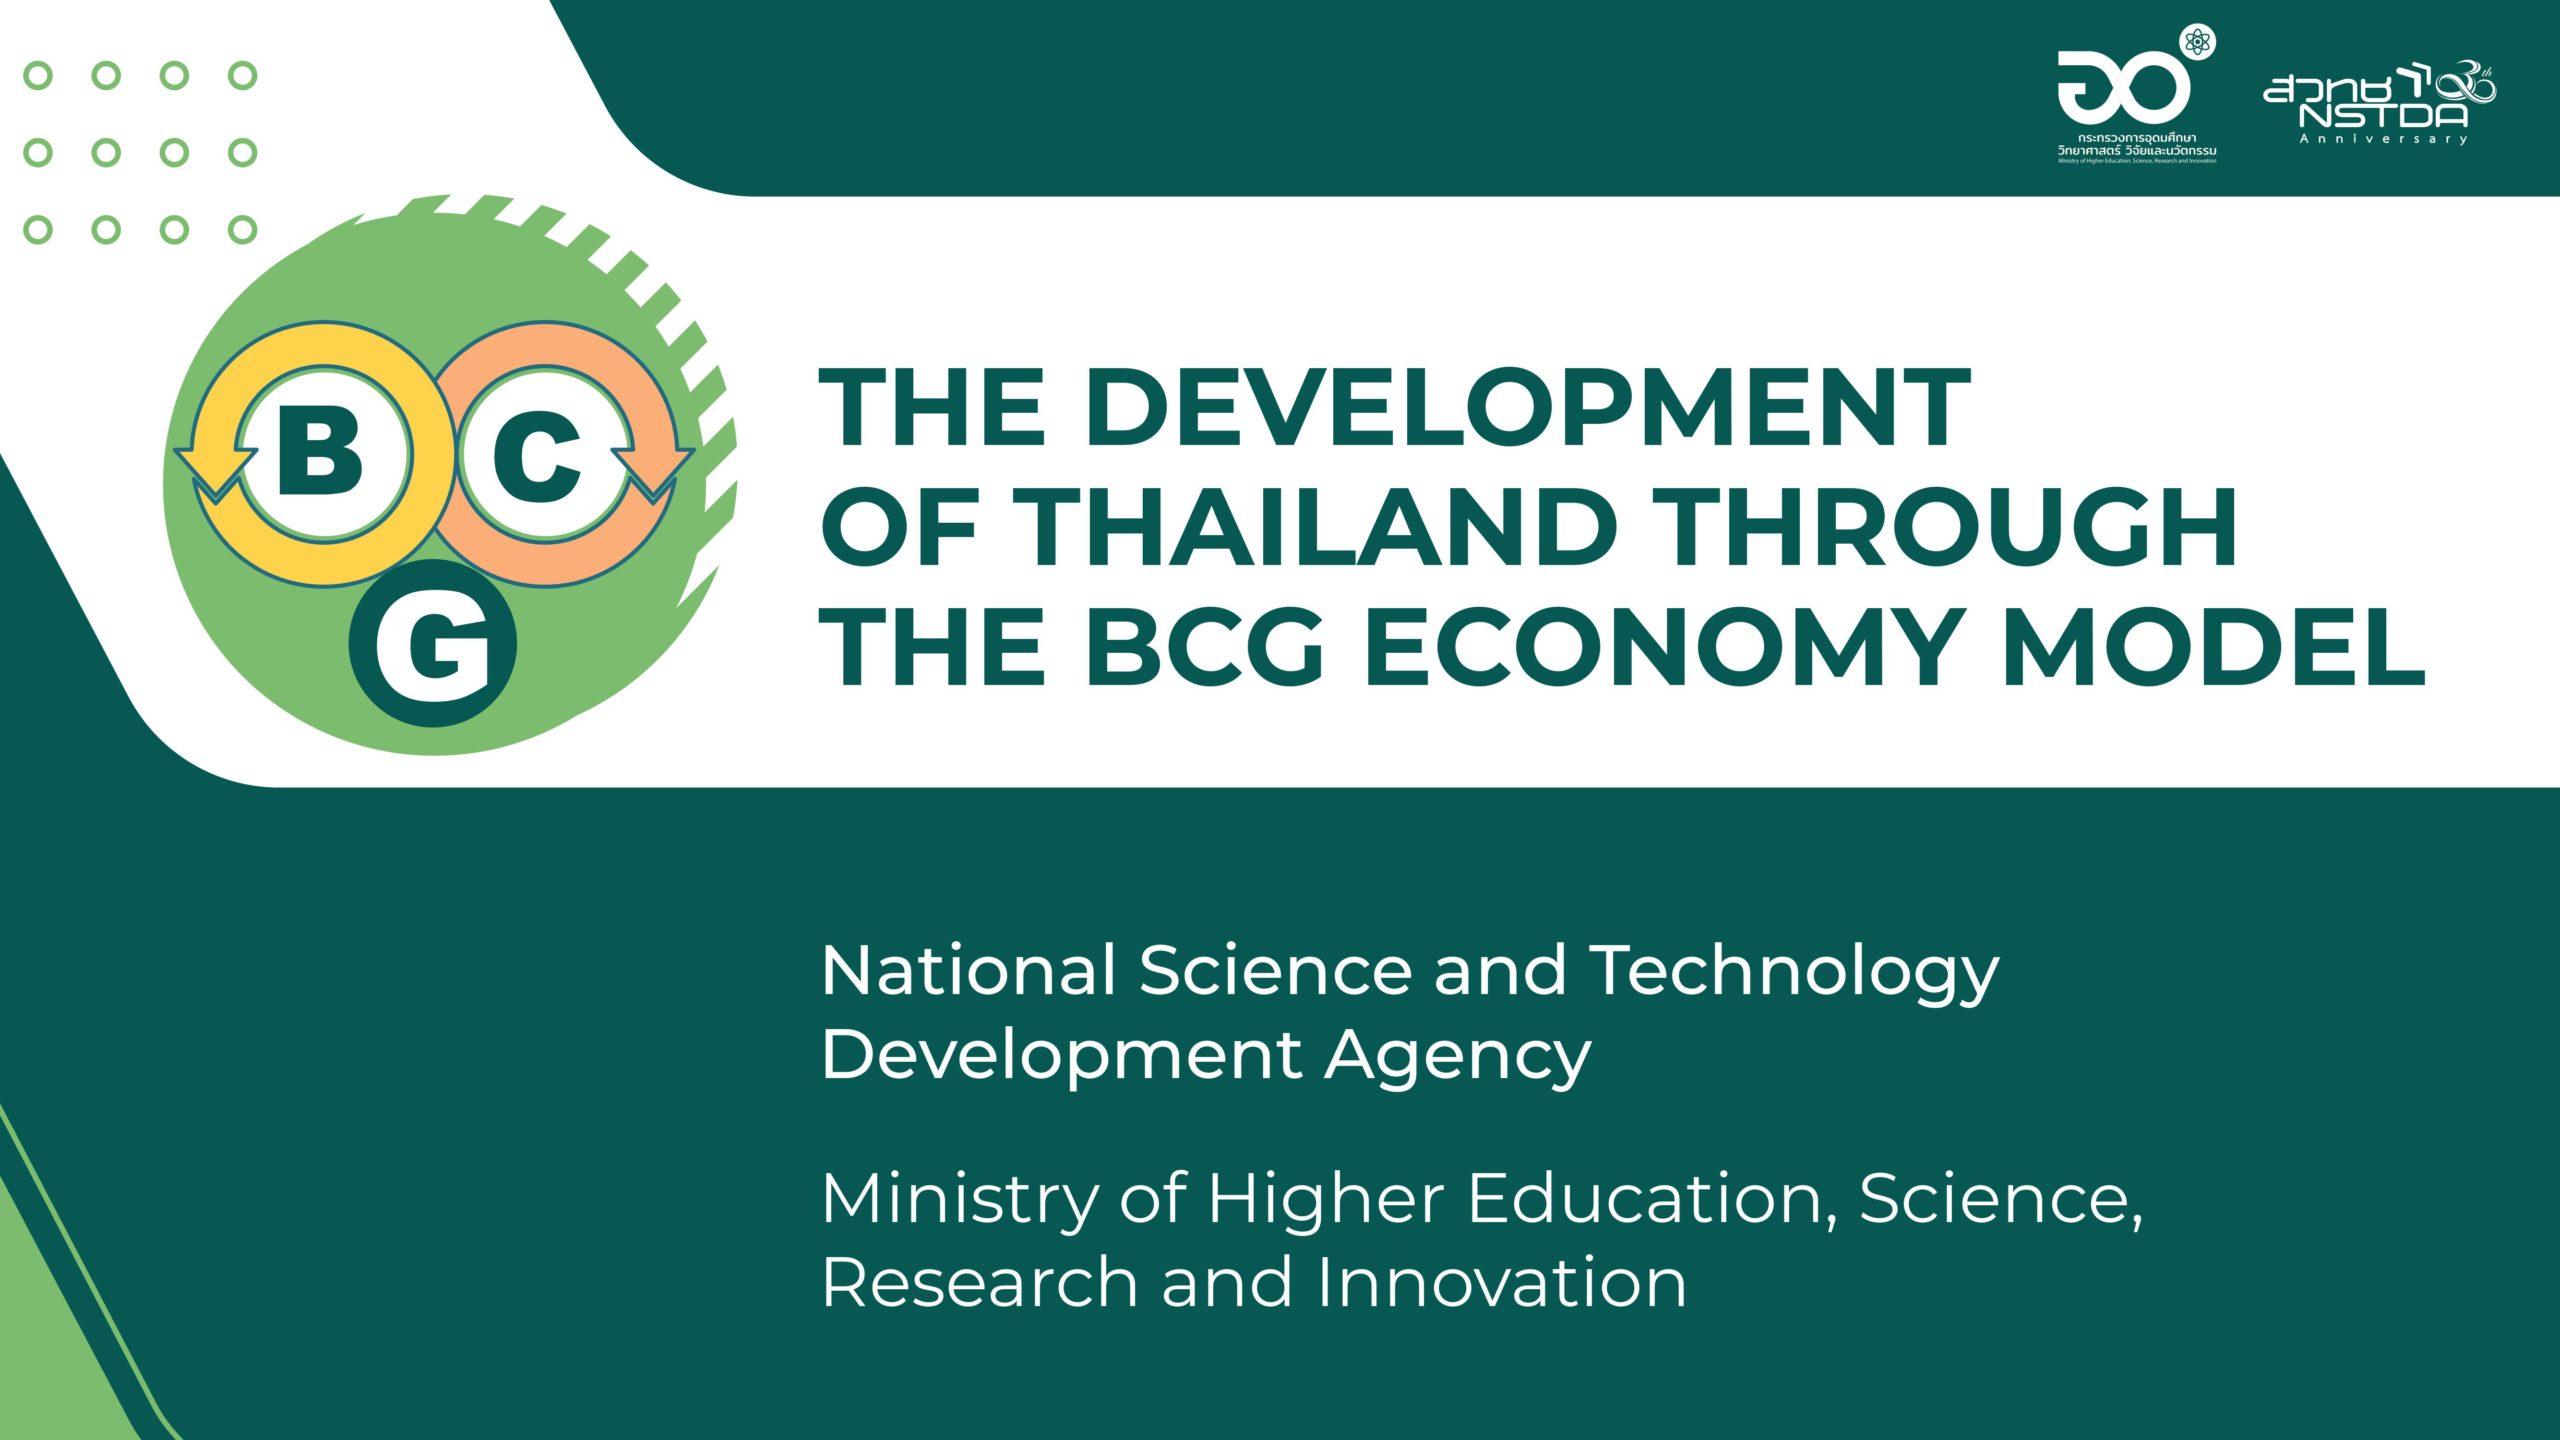 เศรษฐกิจ BCG แนวทางการพัฒนาขับเคลื่อนประเทศไทยอย่างยั่งยืน | Thailand STI and Higher Education Day 2021